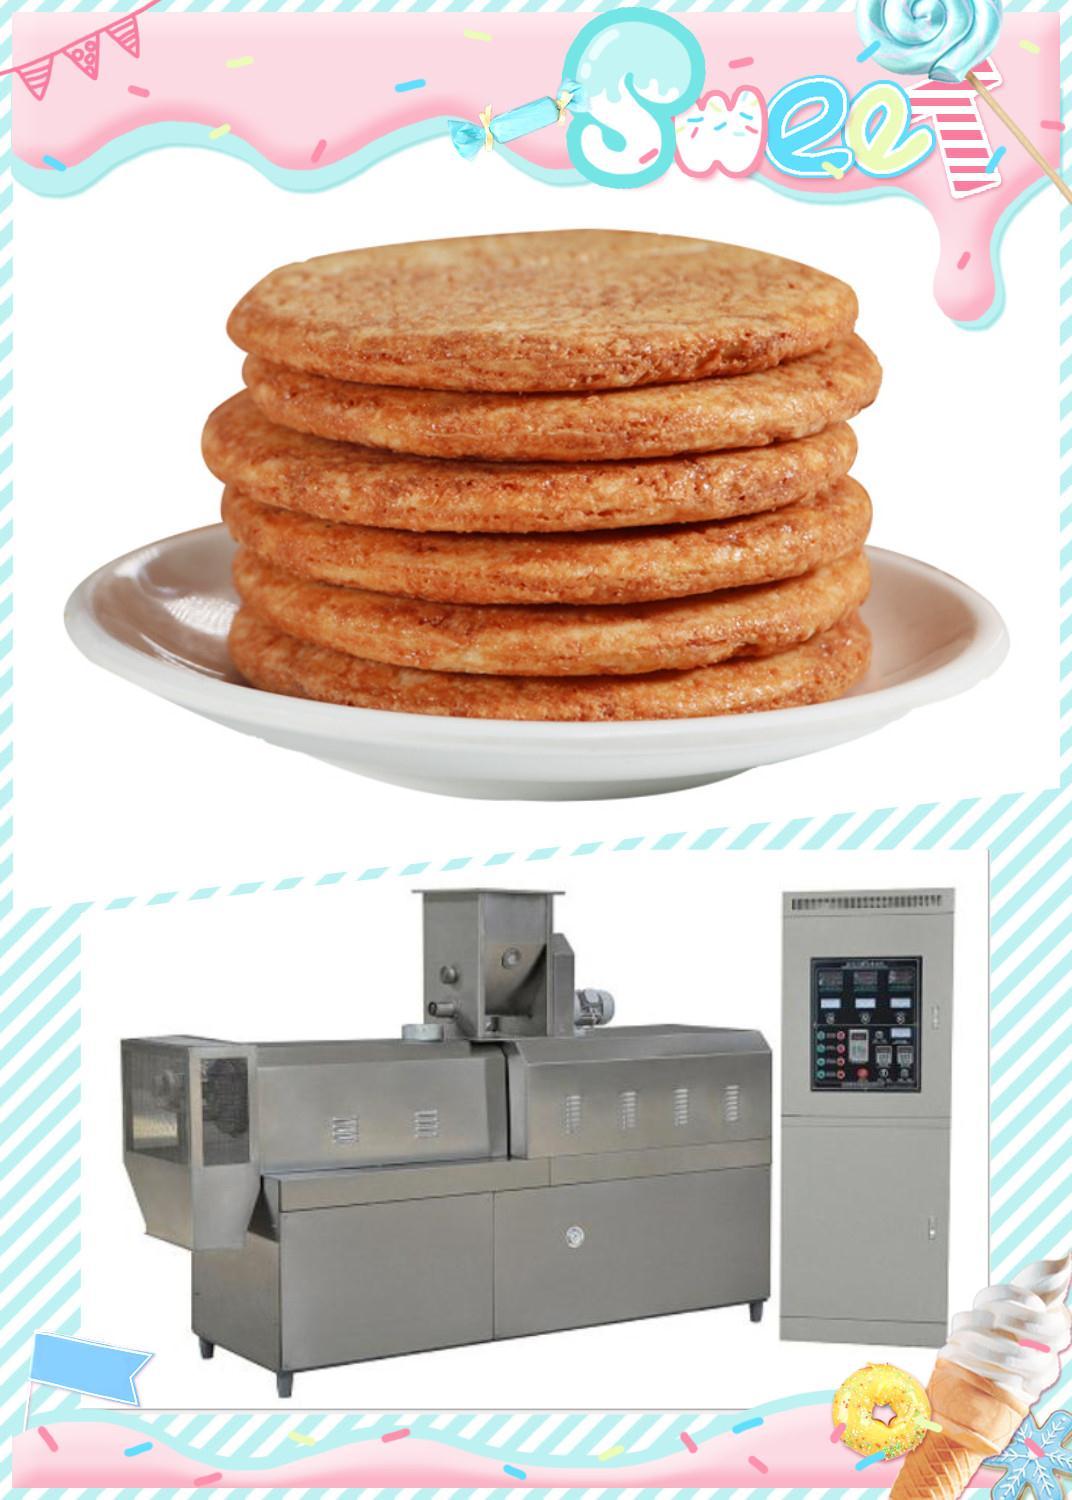 福建热销酱油饼干设备厂家送技术配方